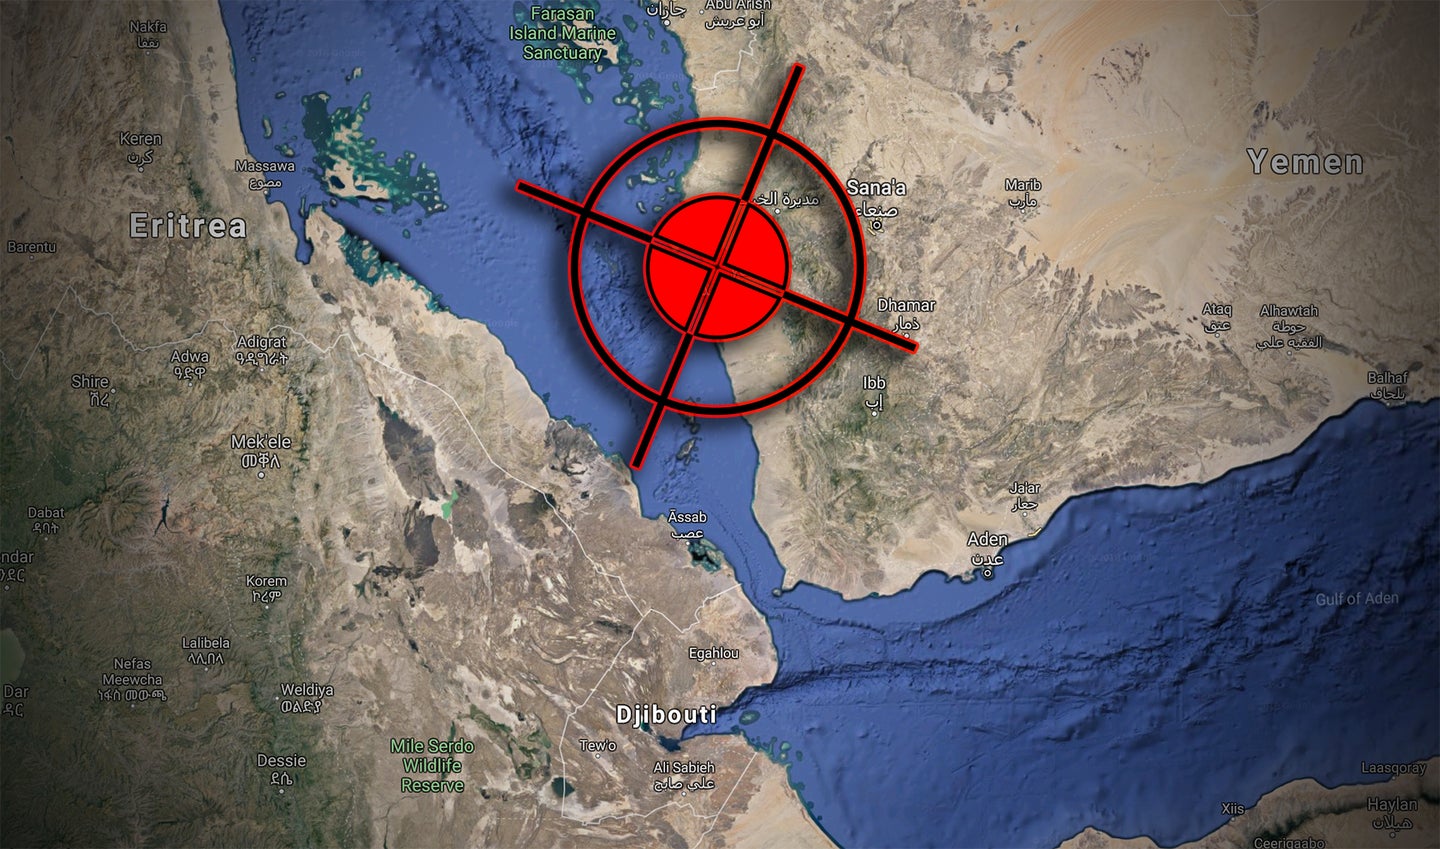 阿联酋海军舰艇在也门海岸两栖行动中被胡塞叛军袭击